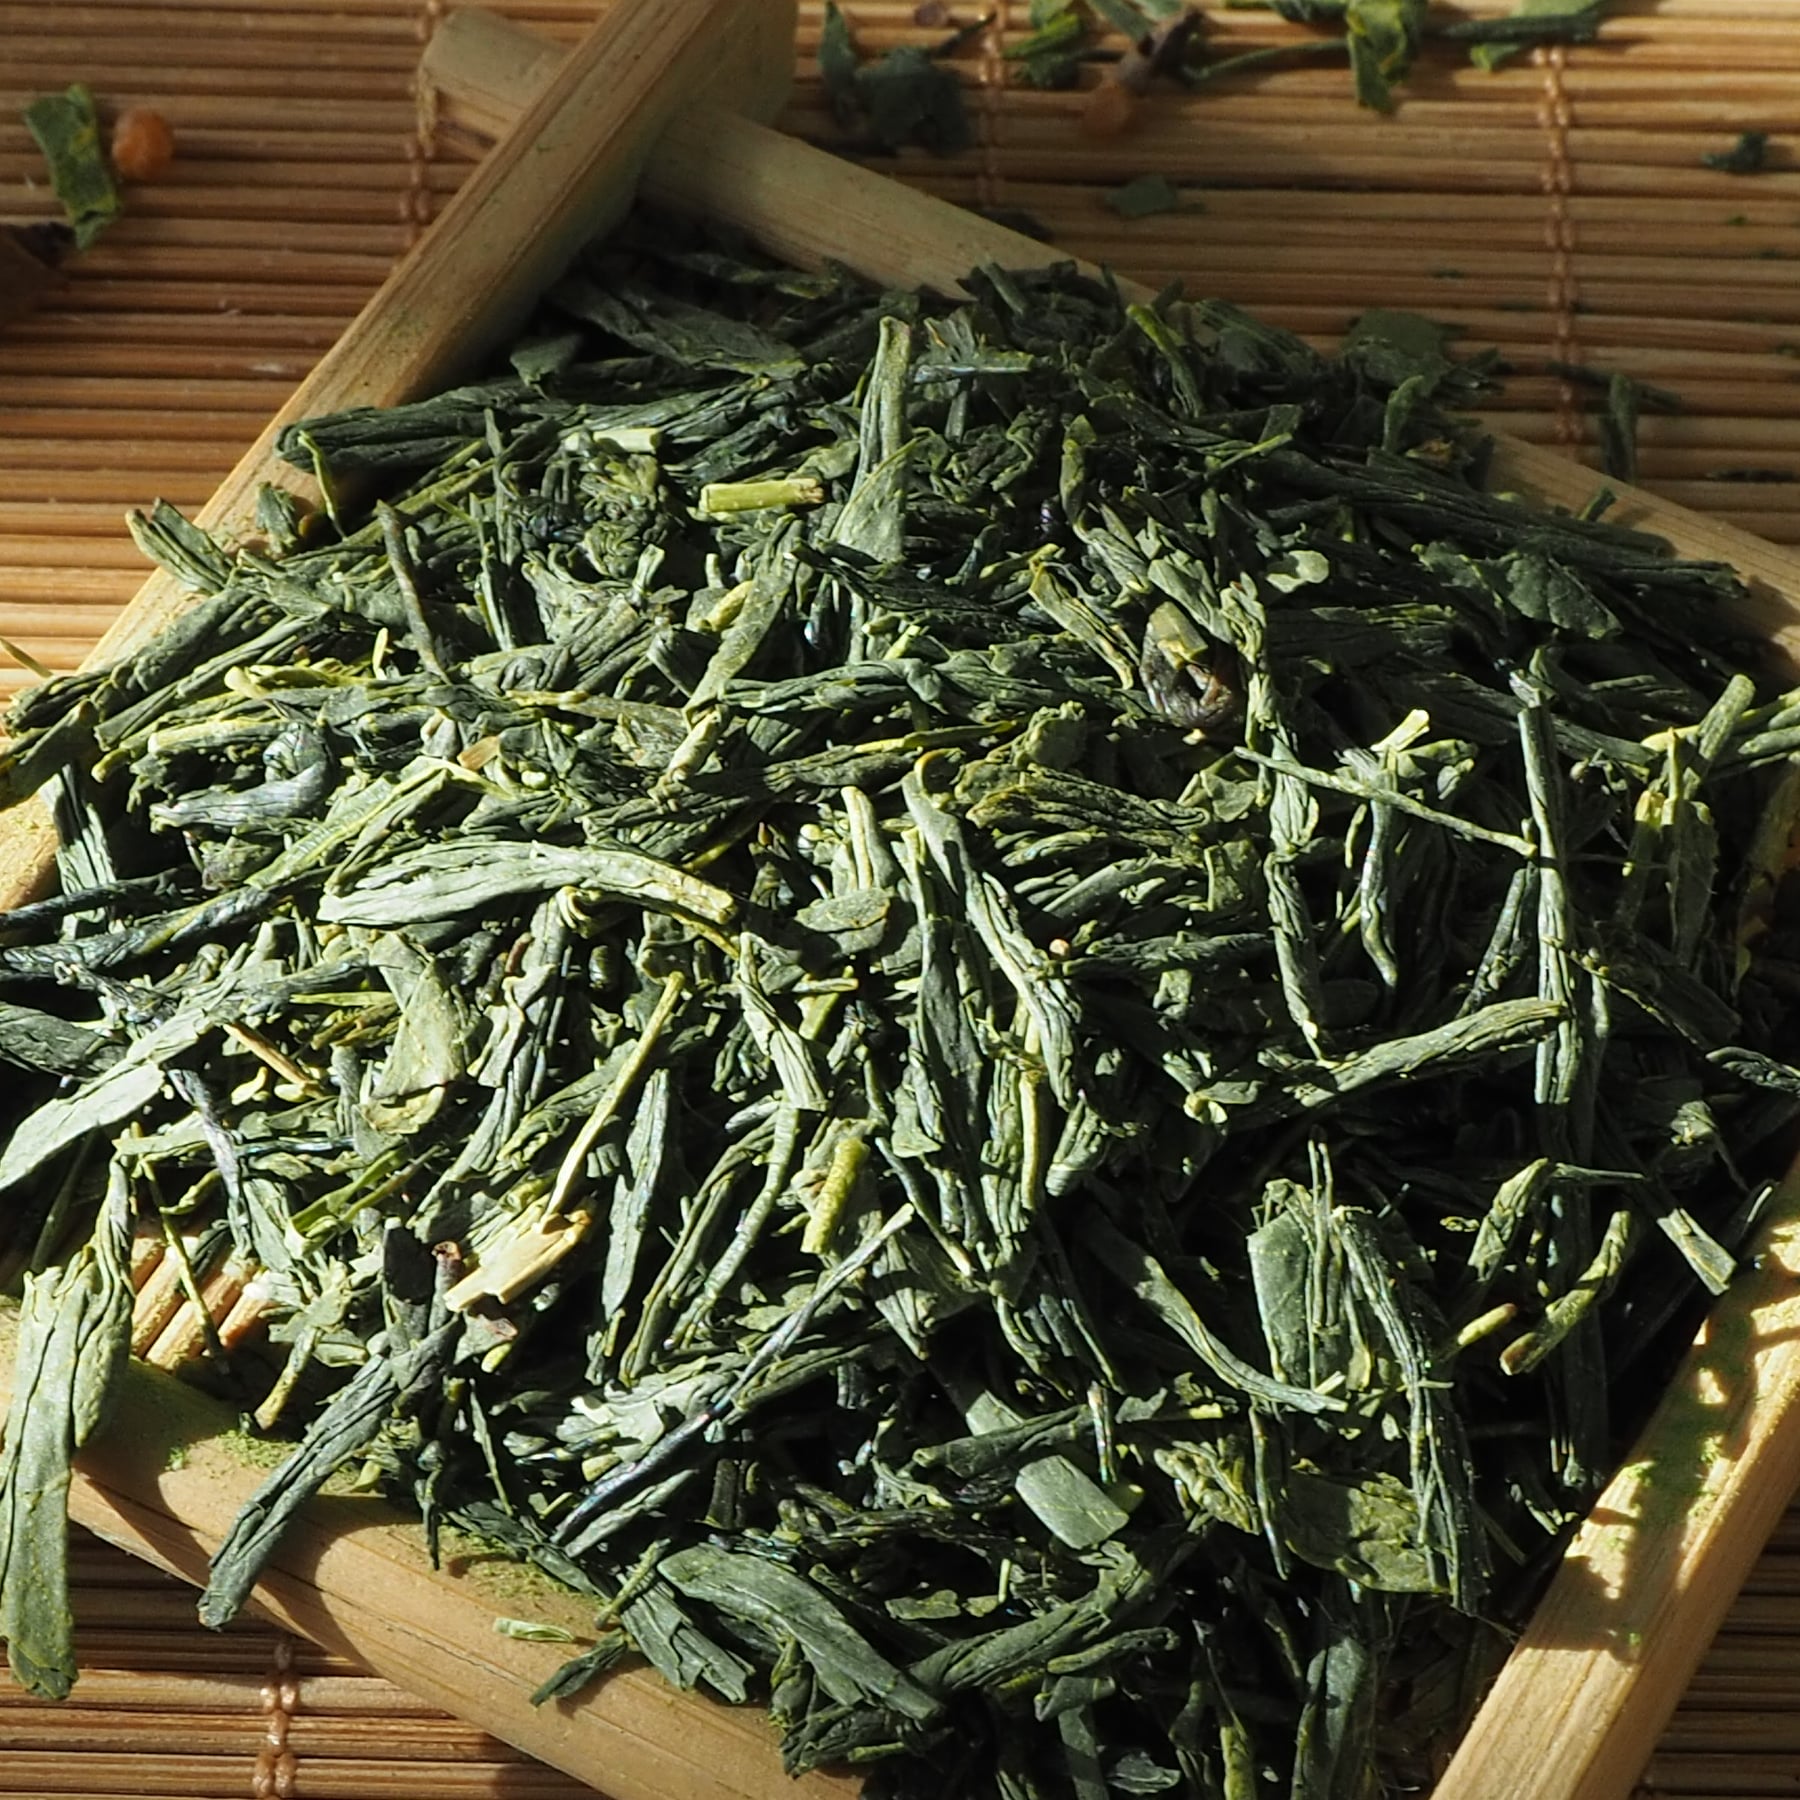 Kyobashi Tea - ชาเขียว - ชาเขียวเซนฉะญี่ปุ่น